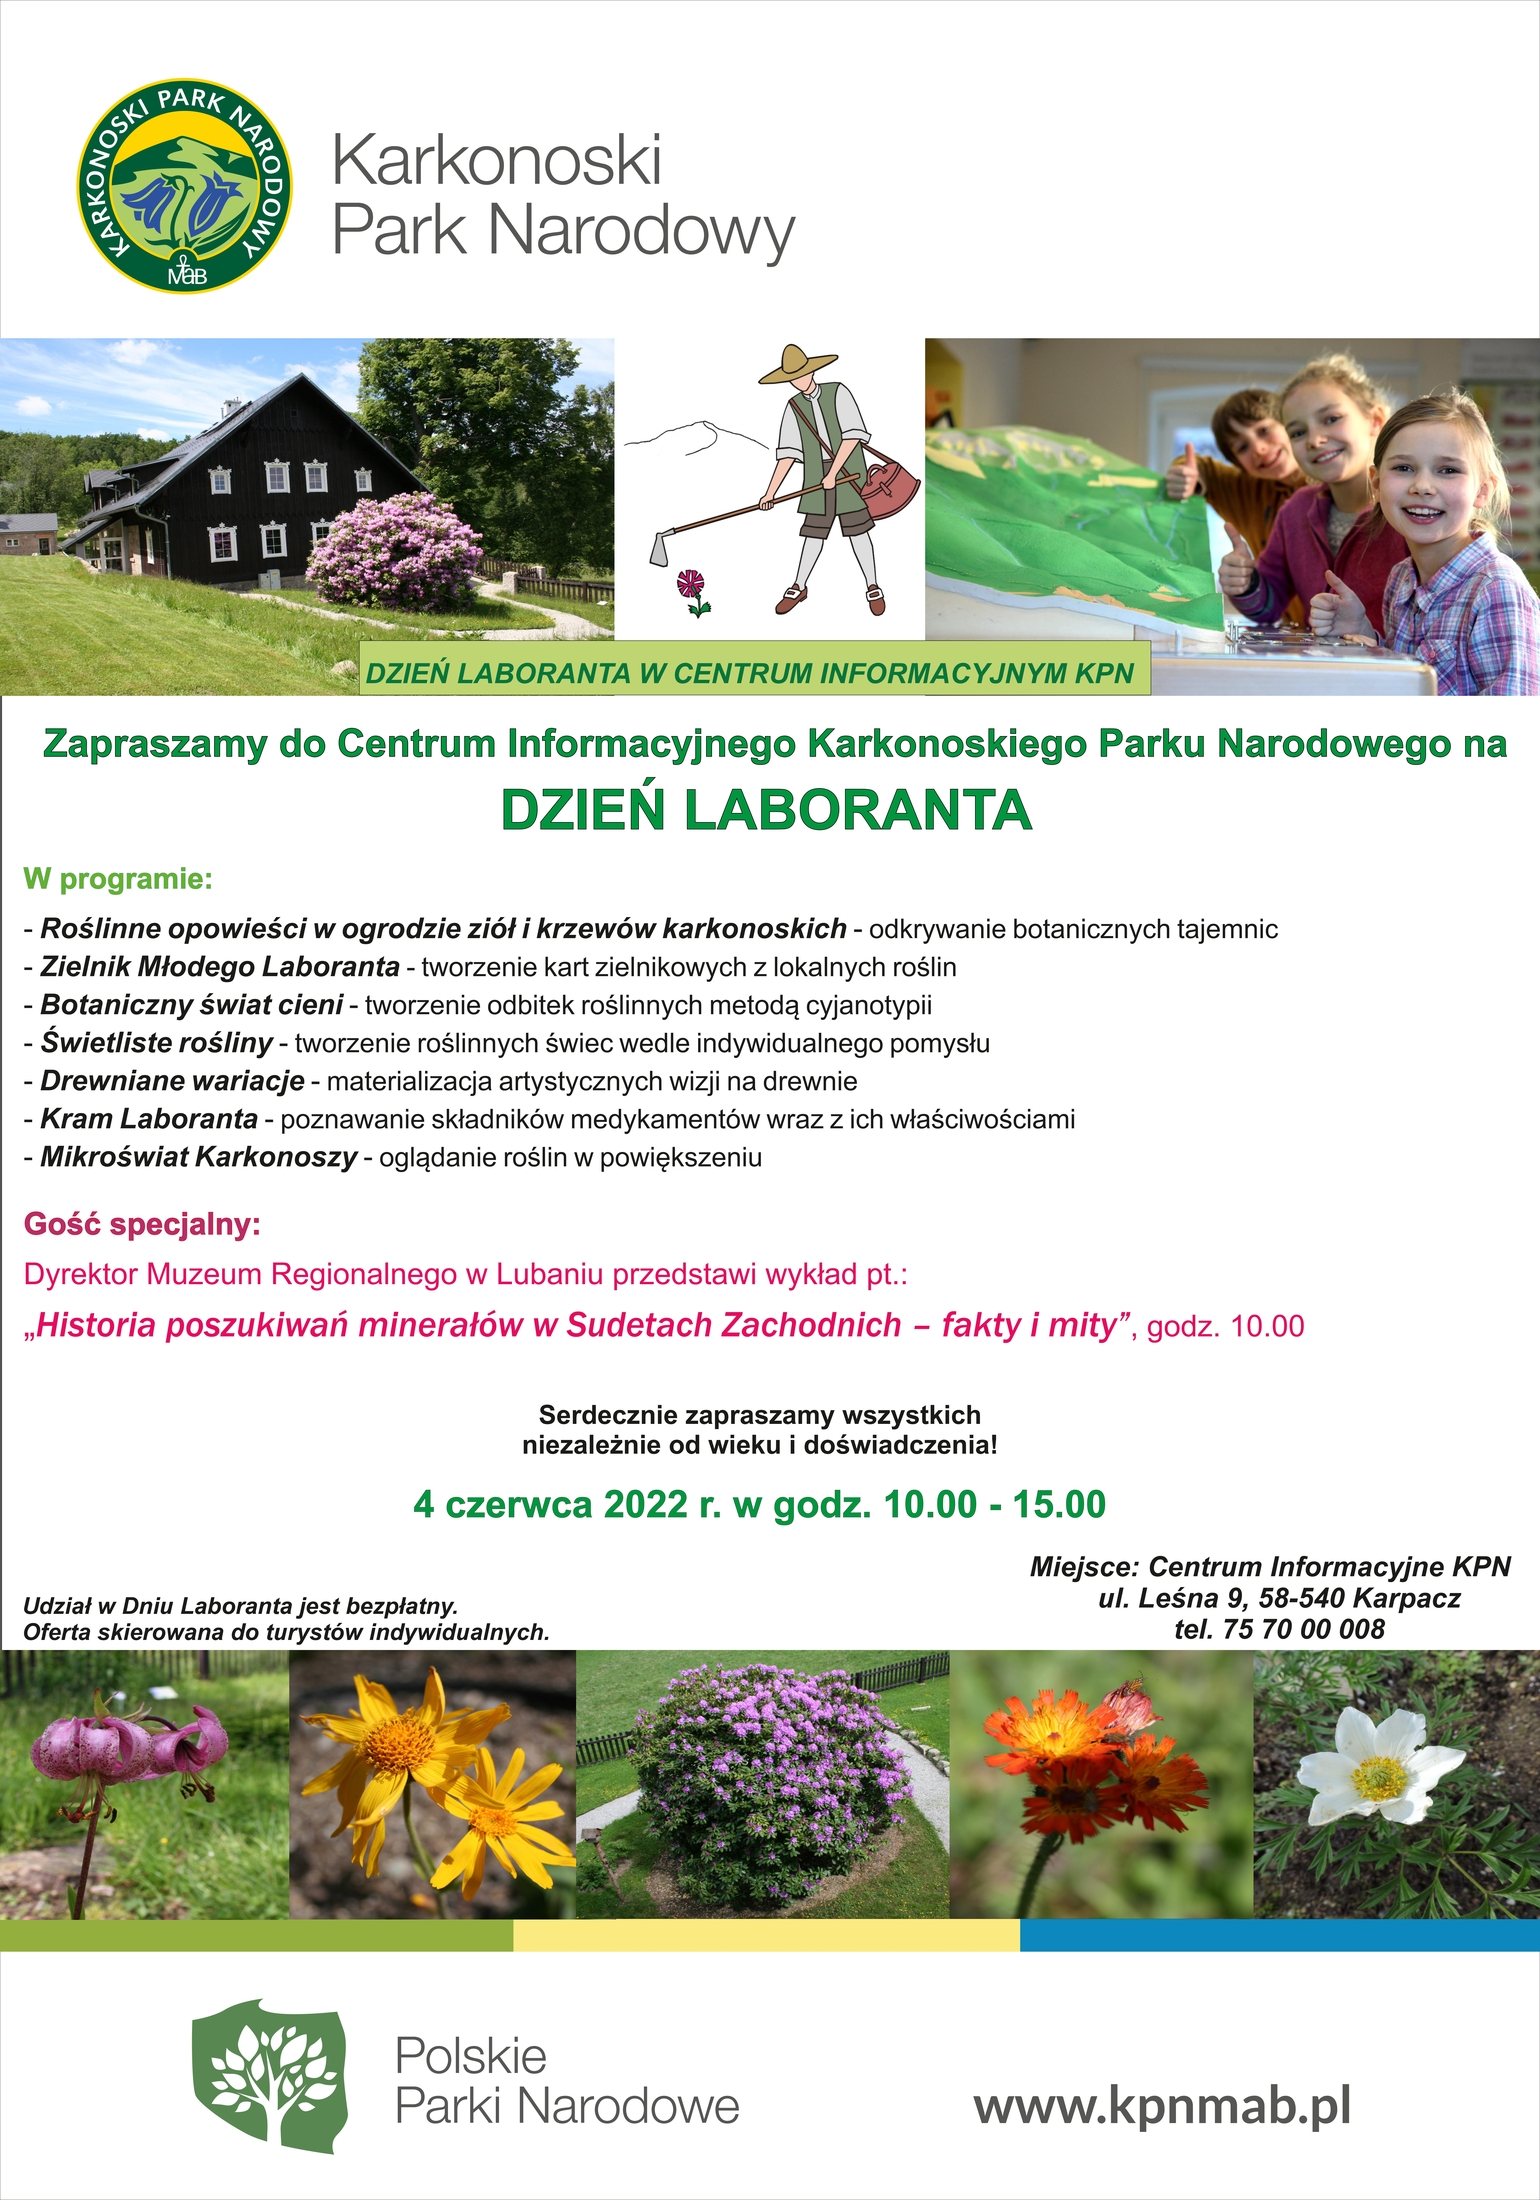 Dzień Laboranta w Centrum Informacyjnym KPN w Karpaczu 4 czerwca '22 od godziny 10